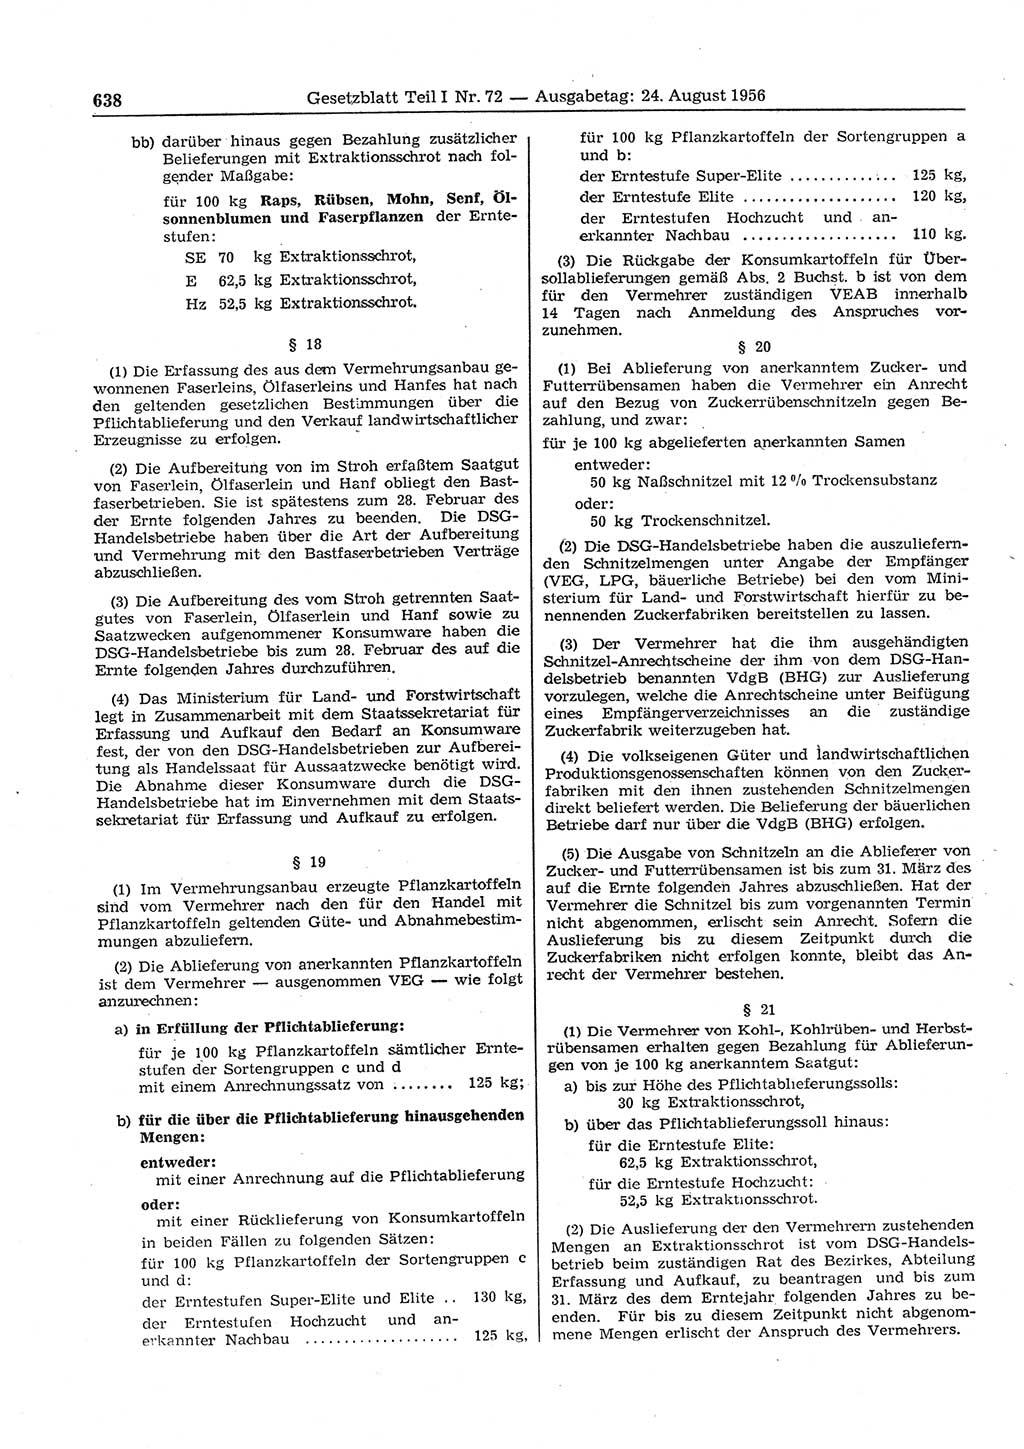 Gesetzblatt (GBl.) der Deutschen Demokratischen Republik (DDR) Teil Ⅰ 1956, Seite 638 (GBl. DDR Ⅰ 1956, S. 638)